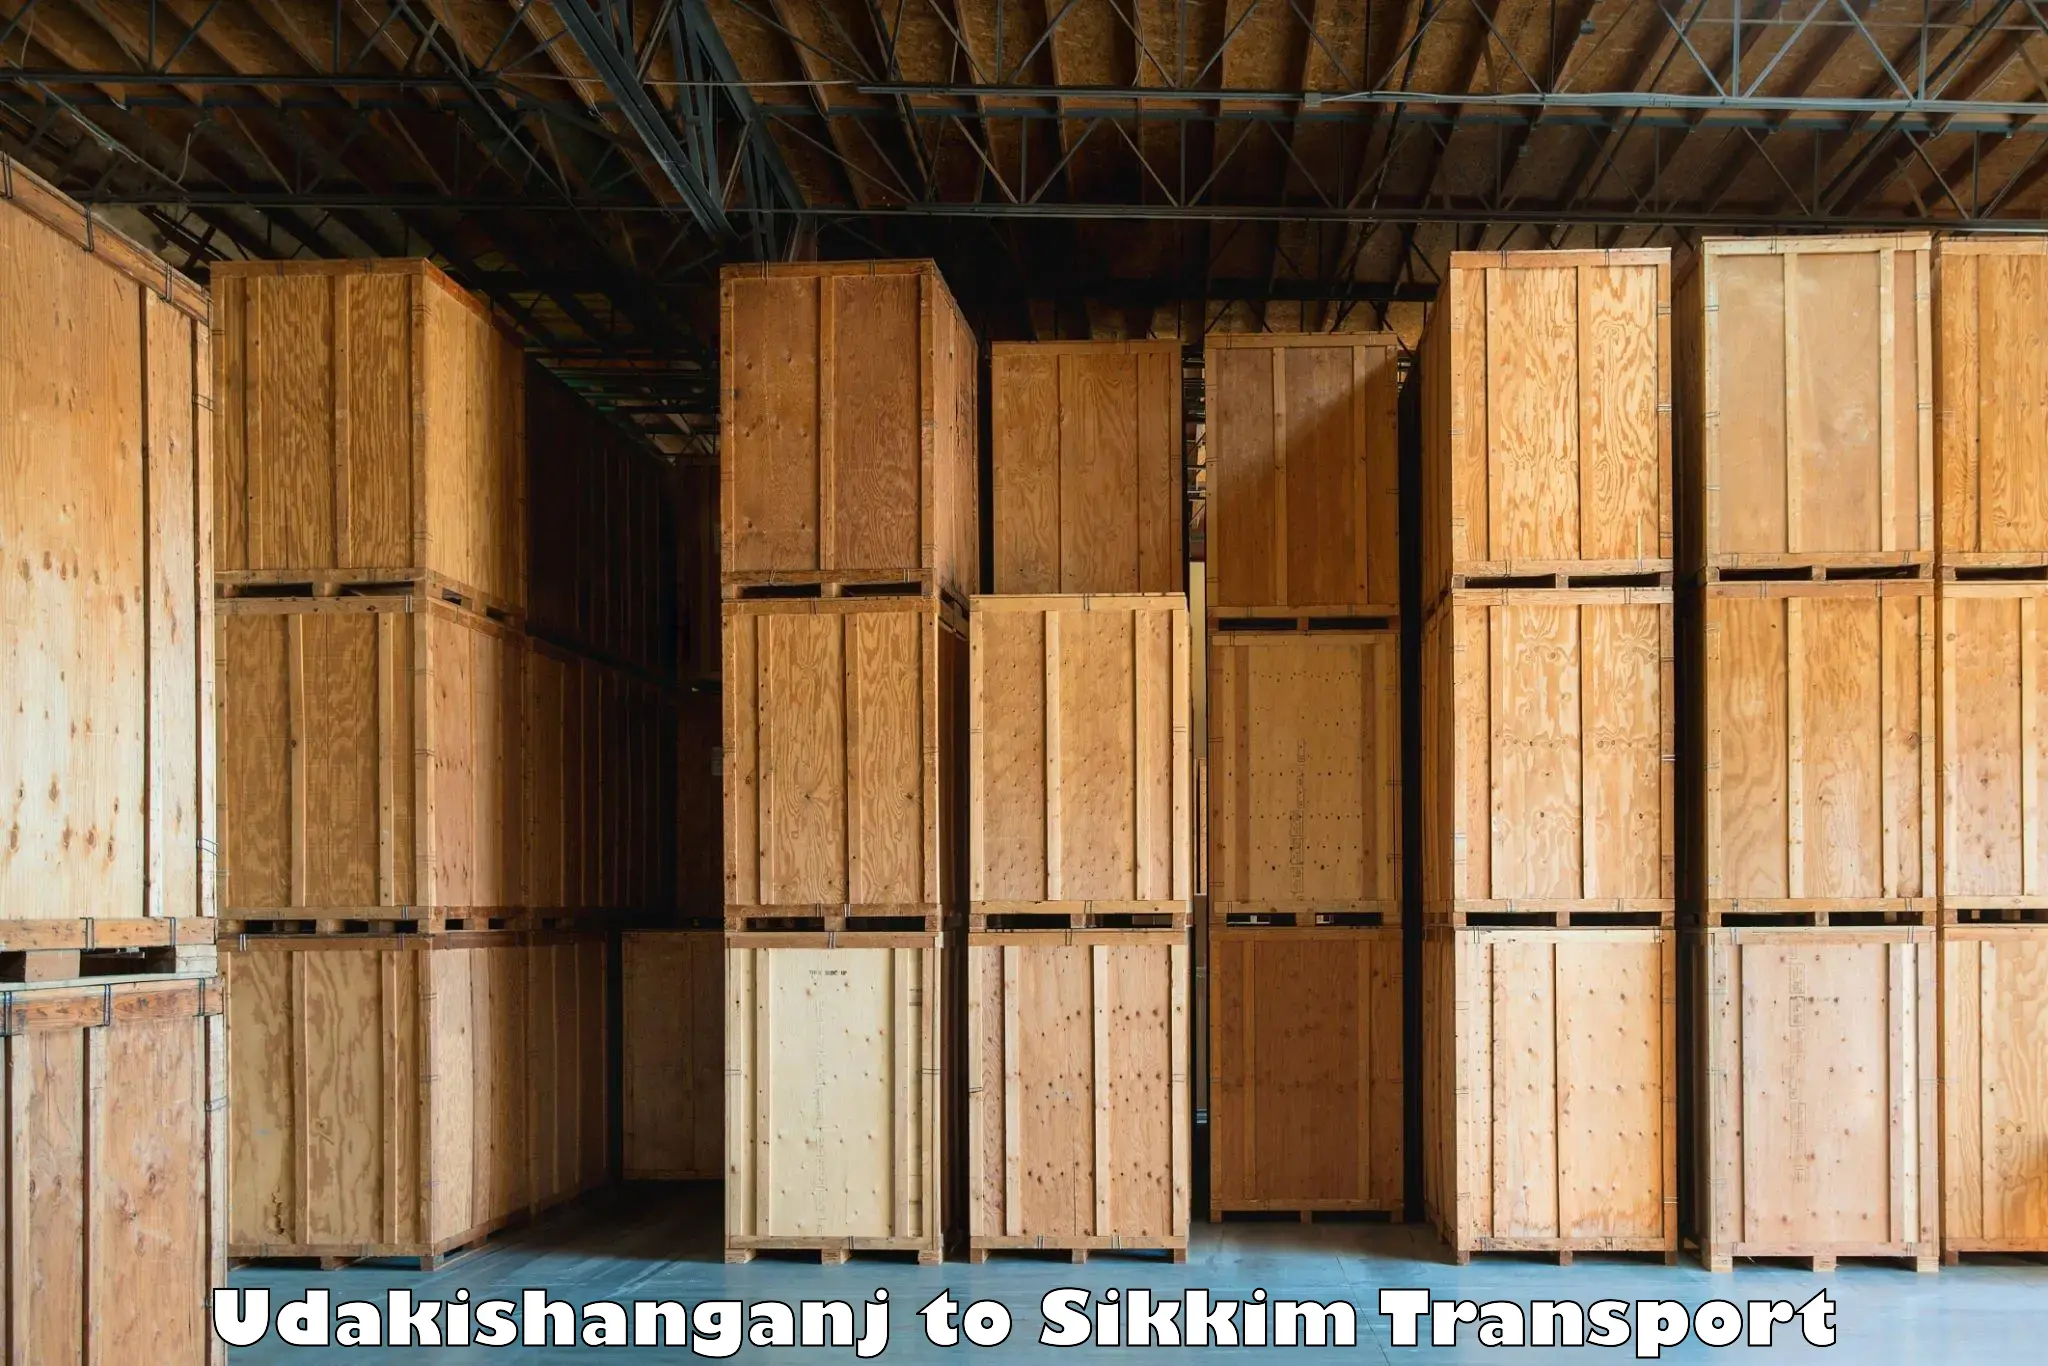 Express transport services Udakishanganj to South Sikkim